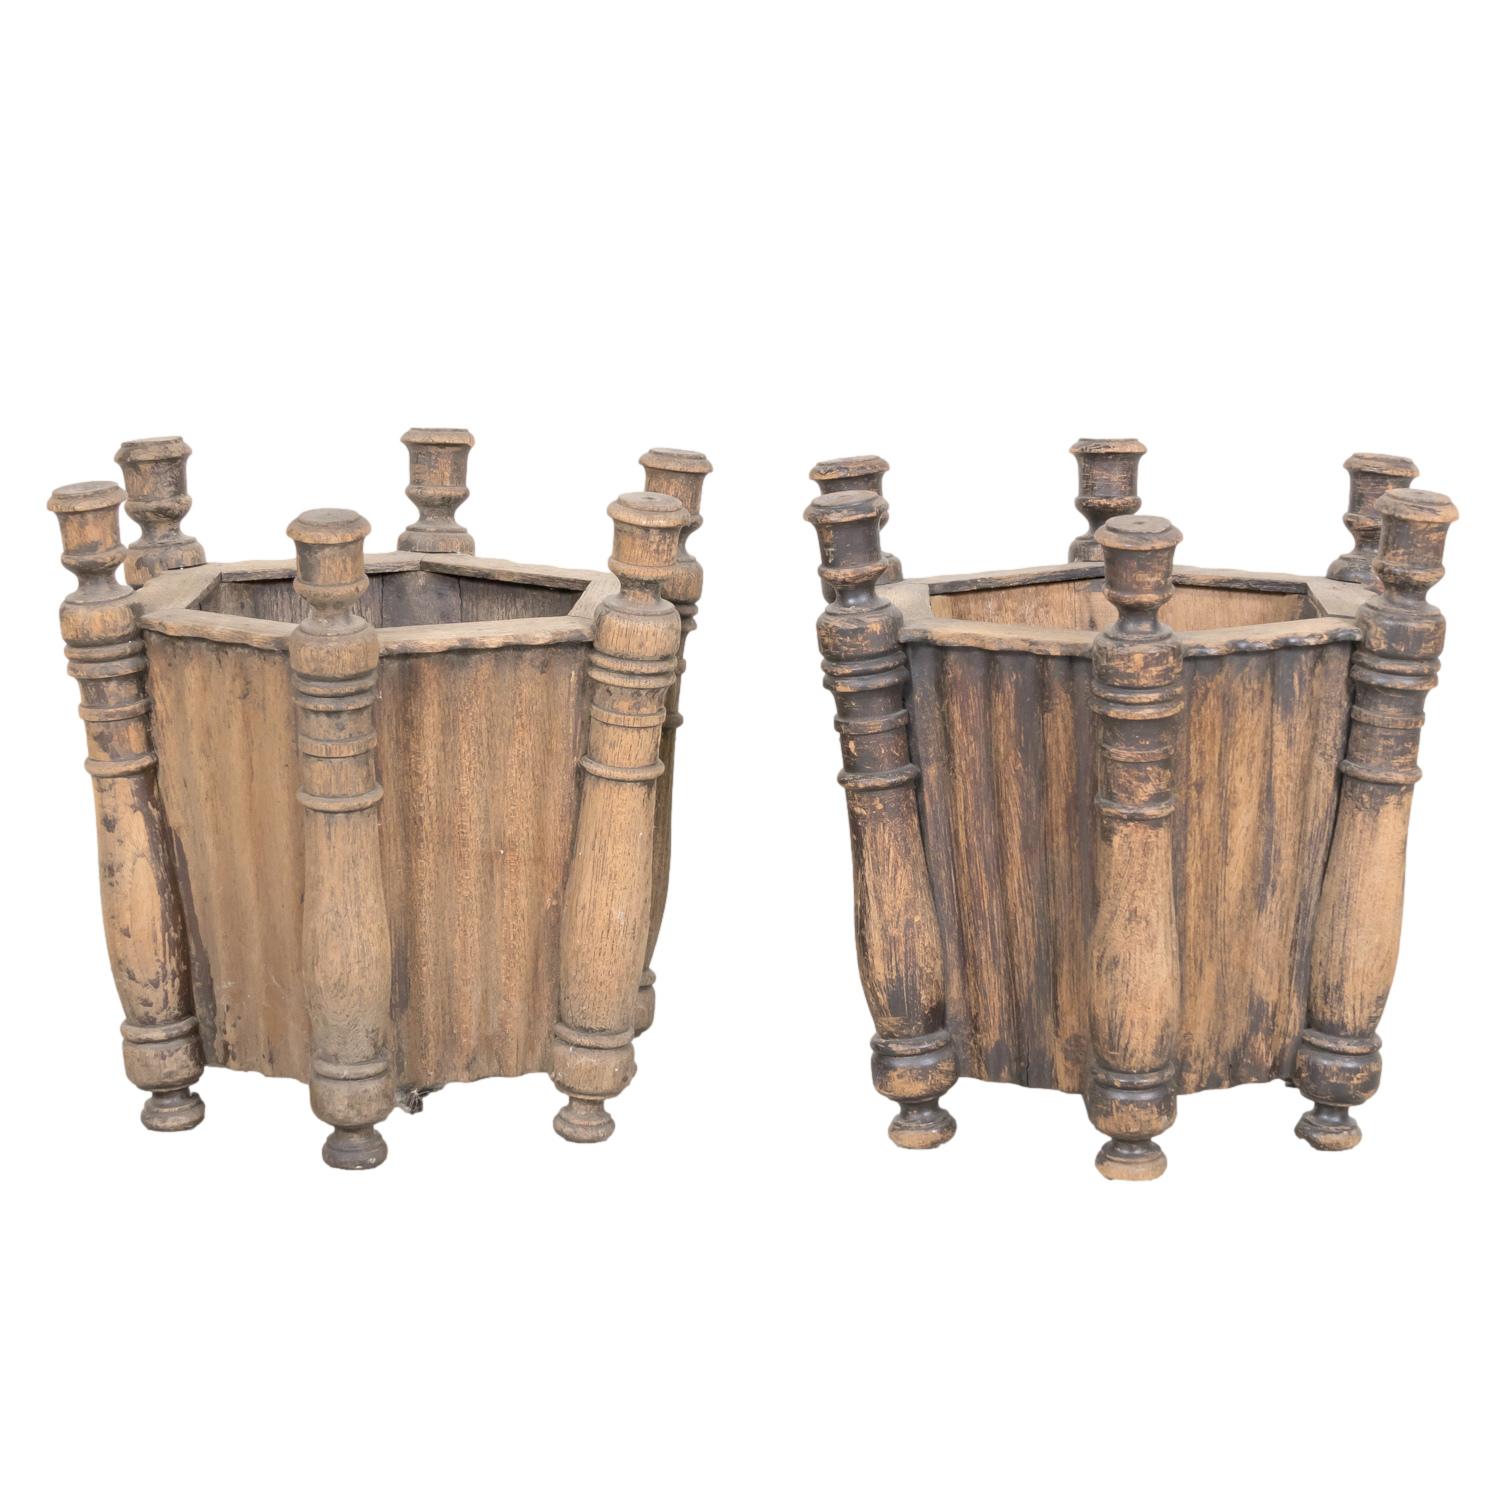 Paar antike französische geschnitzte Eiche sechseckige Pflanzgefäße oder Jardinieres